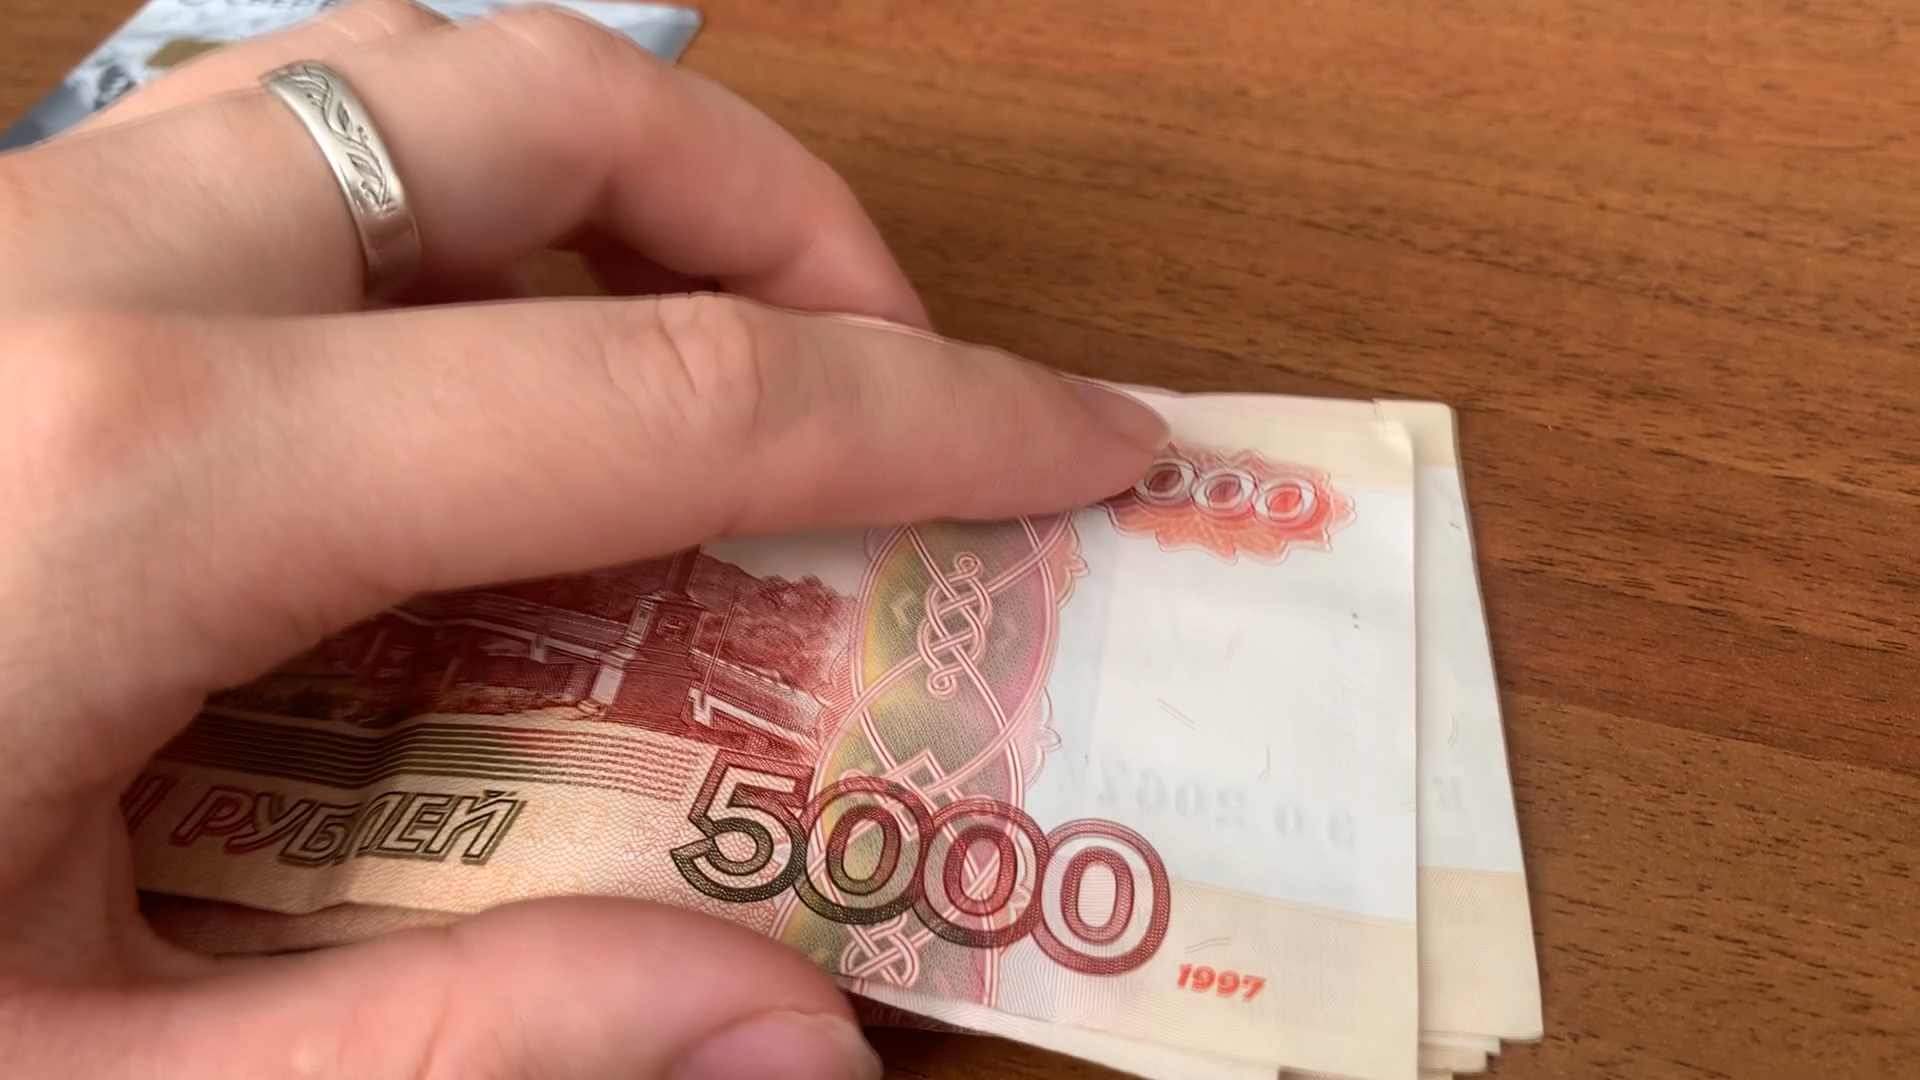 Фальшивые 5000 рублей